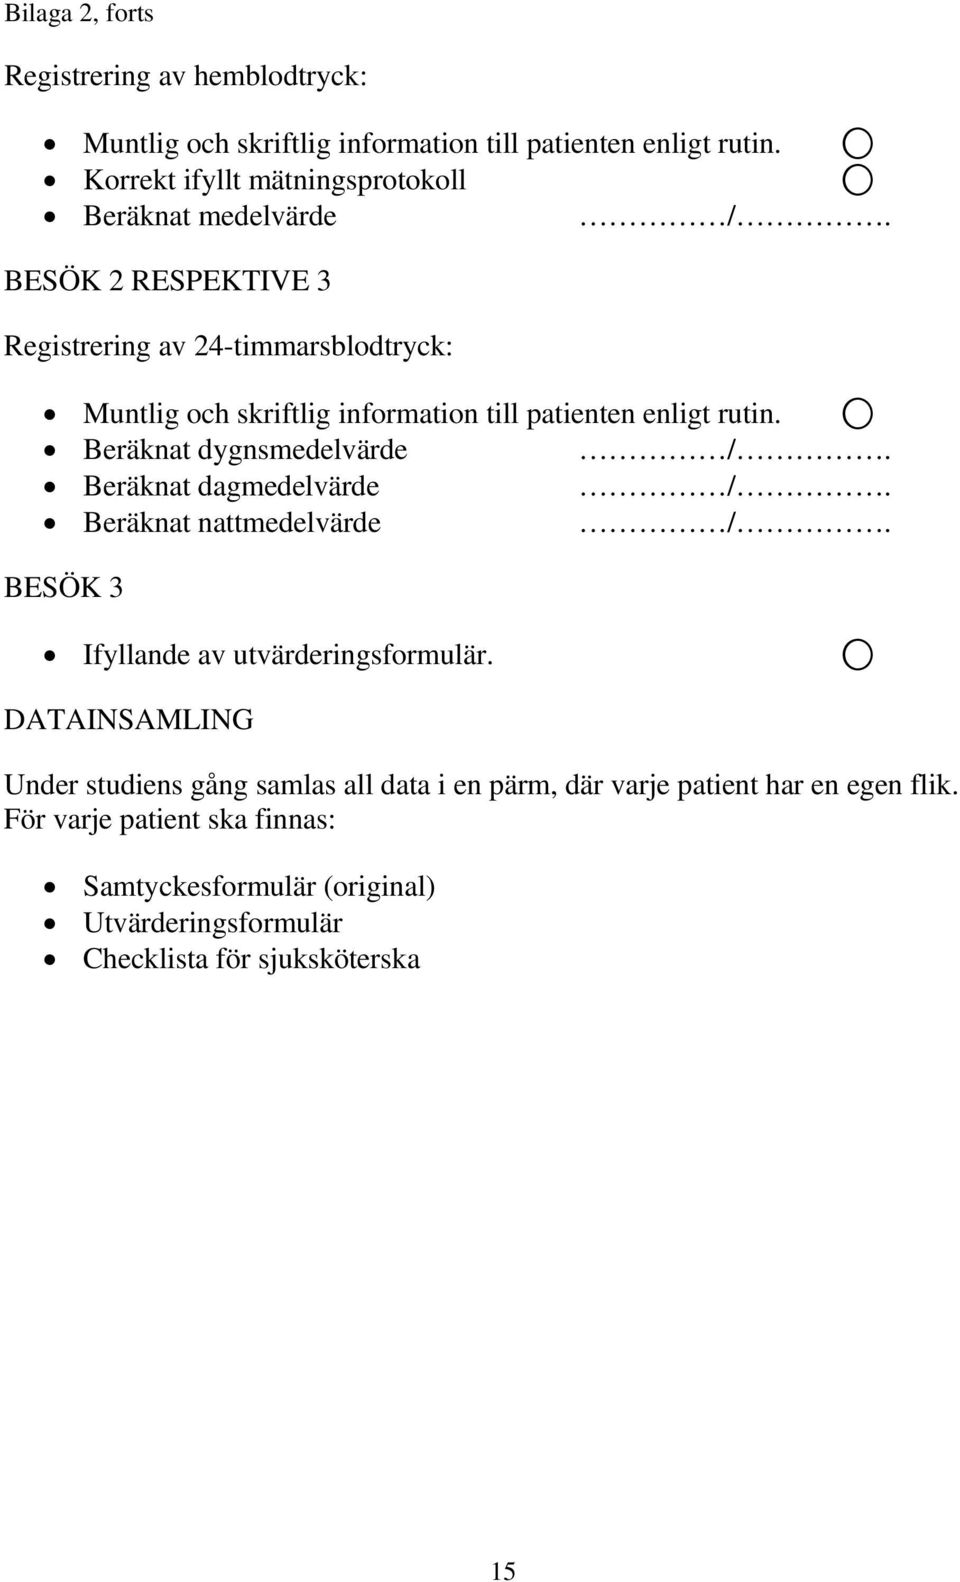 BESÖK 2 RESPEKTIVE 3 Registrering av 24-timmarsblodtryck: Muntlig och skriftlig information till patienten enligt rutin. Beräknat dygnsmedelvärde /.